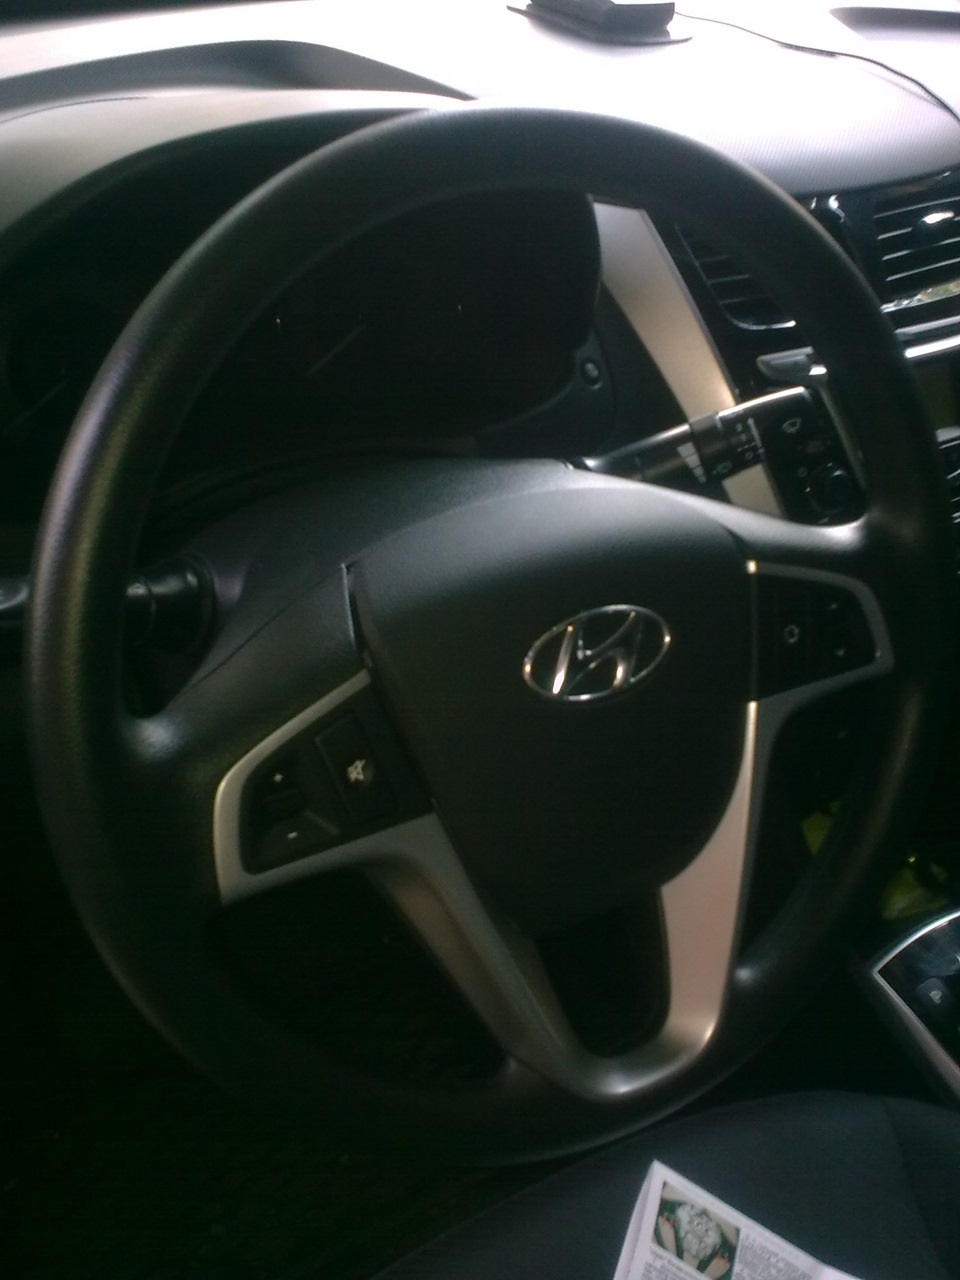 Установите передние колеса в положение, соответствующее прямолинейному движению автомобиля Hyundai Solaris